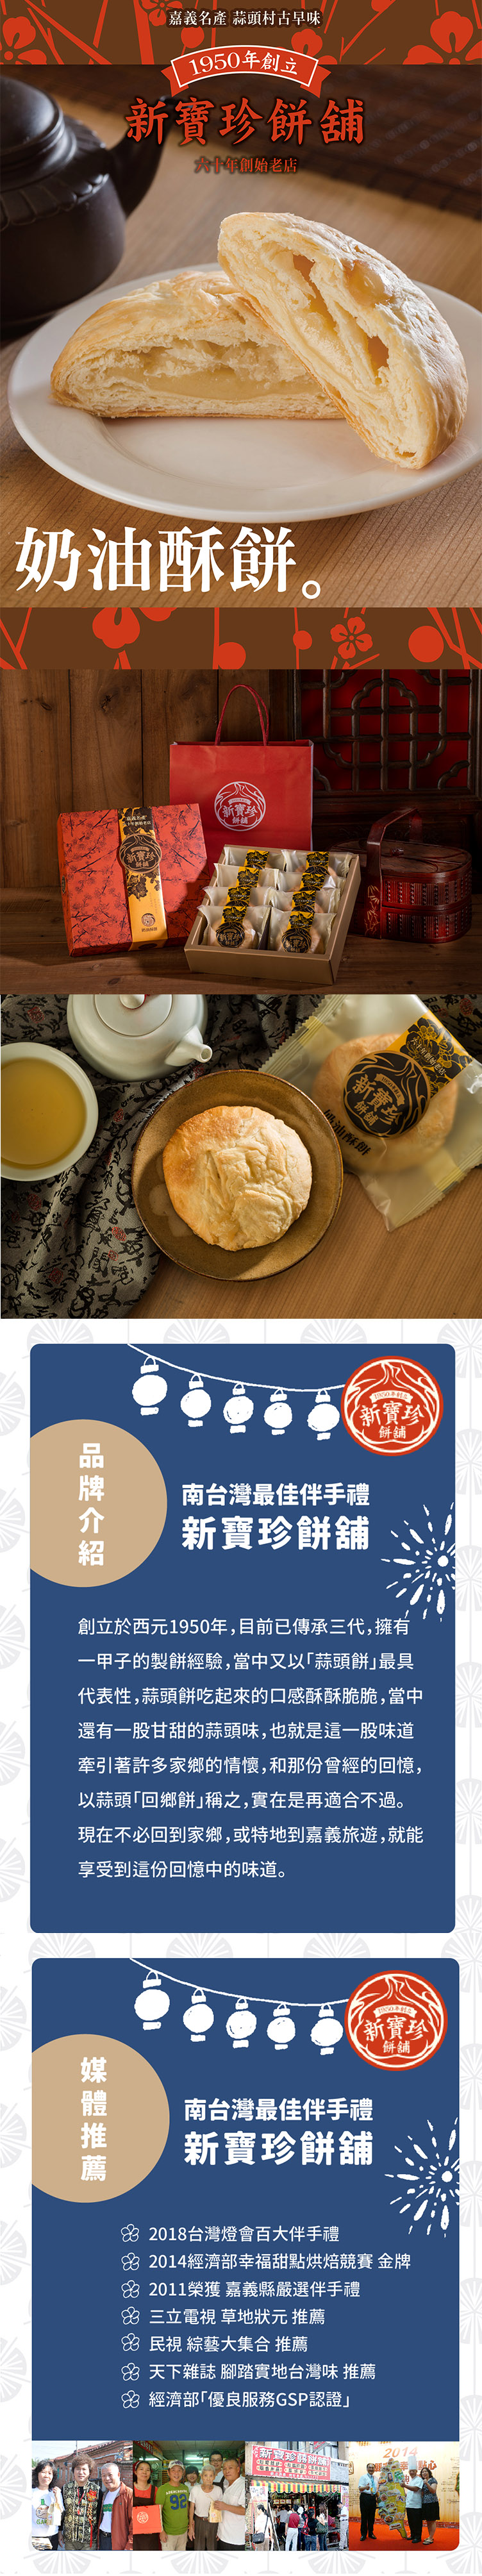 【新寶珍餅舖】奶油酥餅禮盒(8入/盒) 六十年老店招牌商品